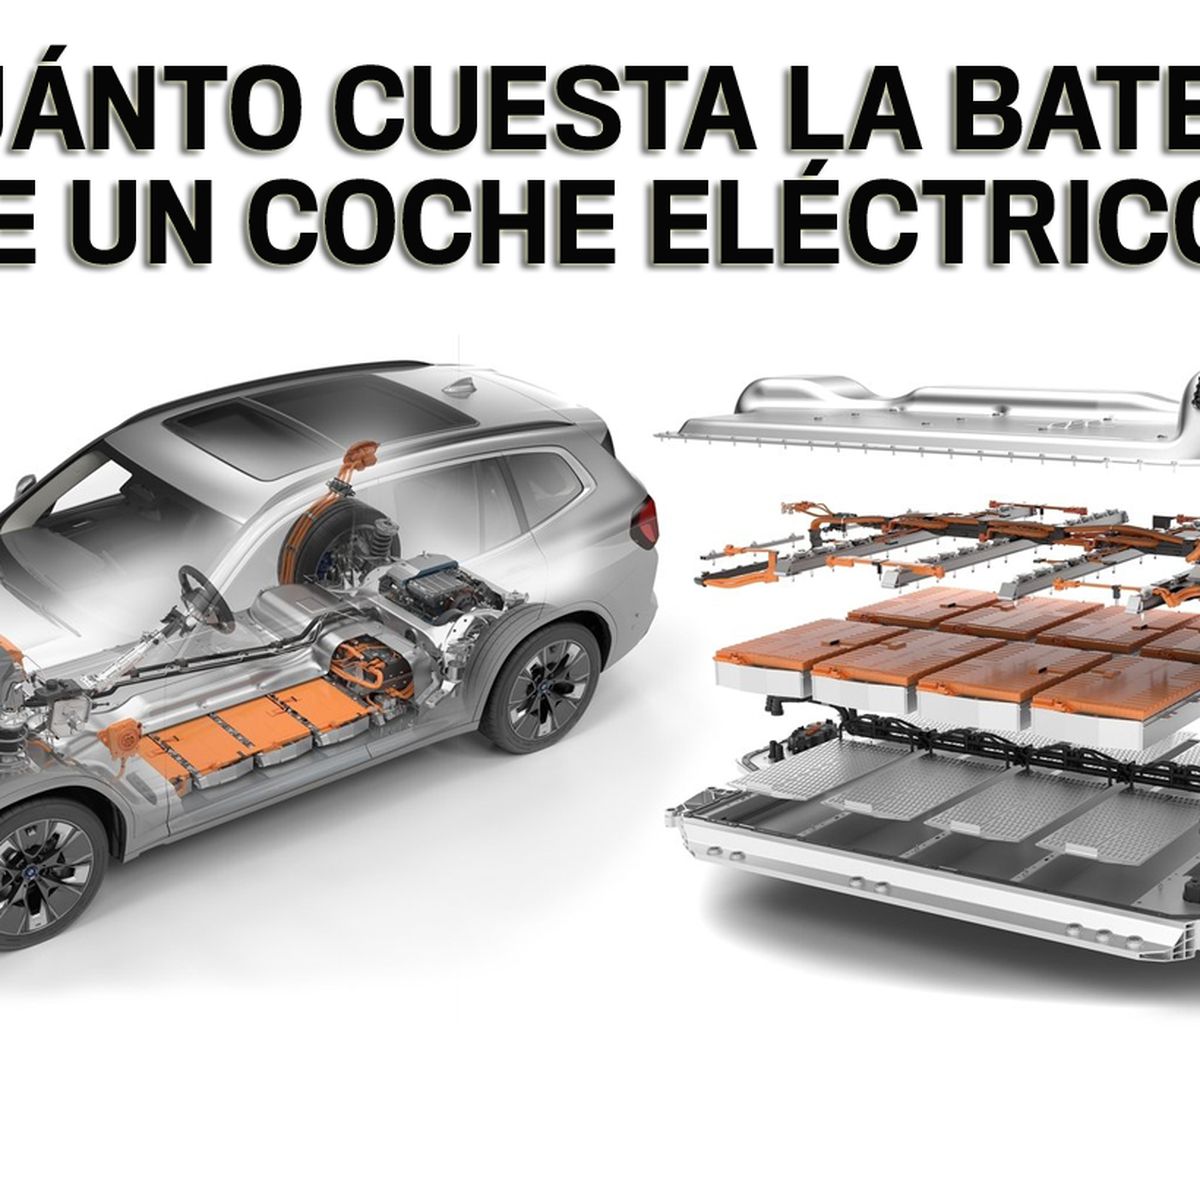 La actualización de las baterías del coche eléctrico es un gran engaño